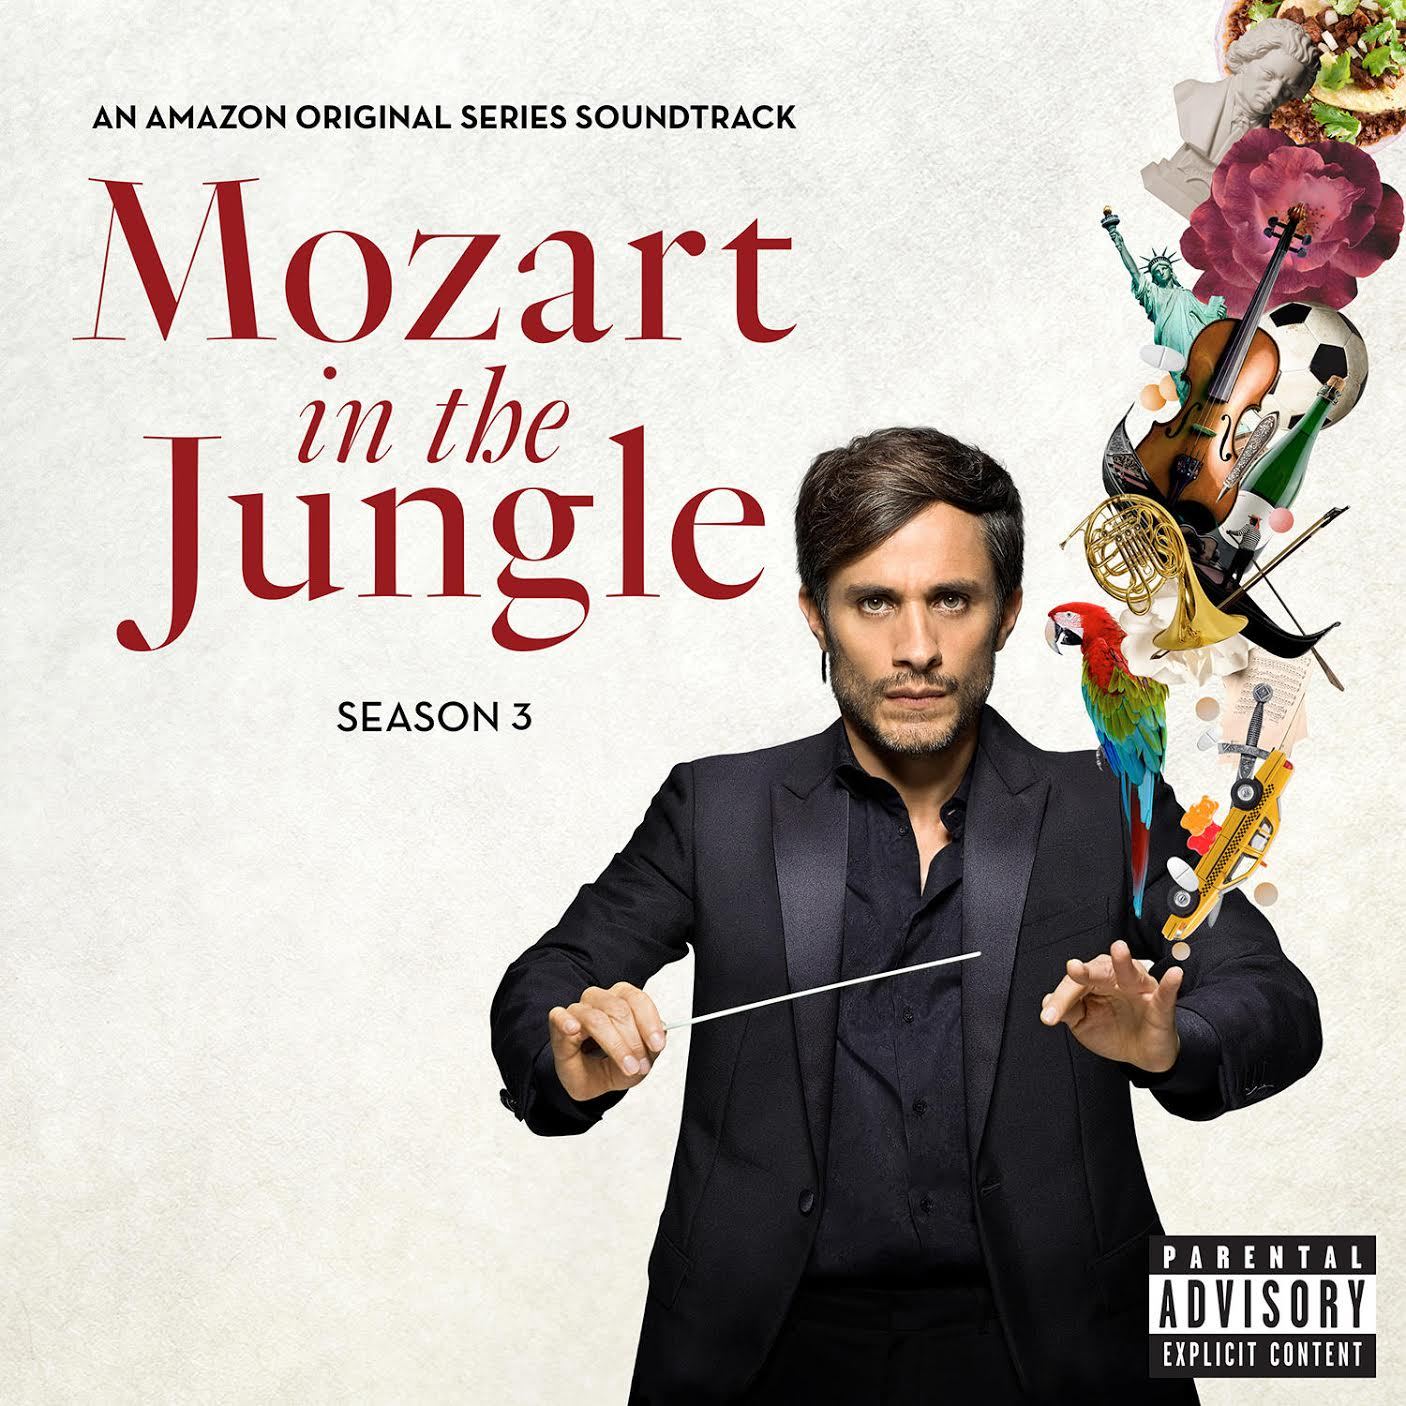 Mozart in the Jungle Season 3 soundtrack